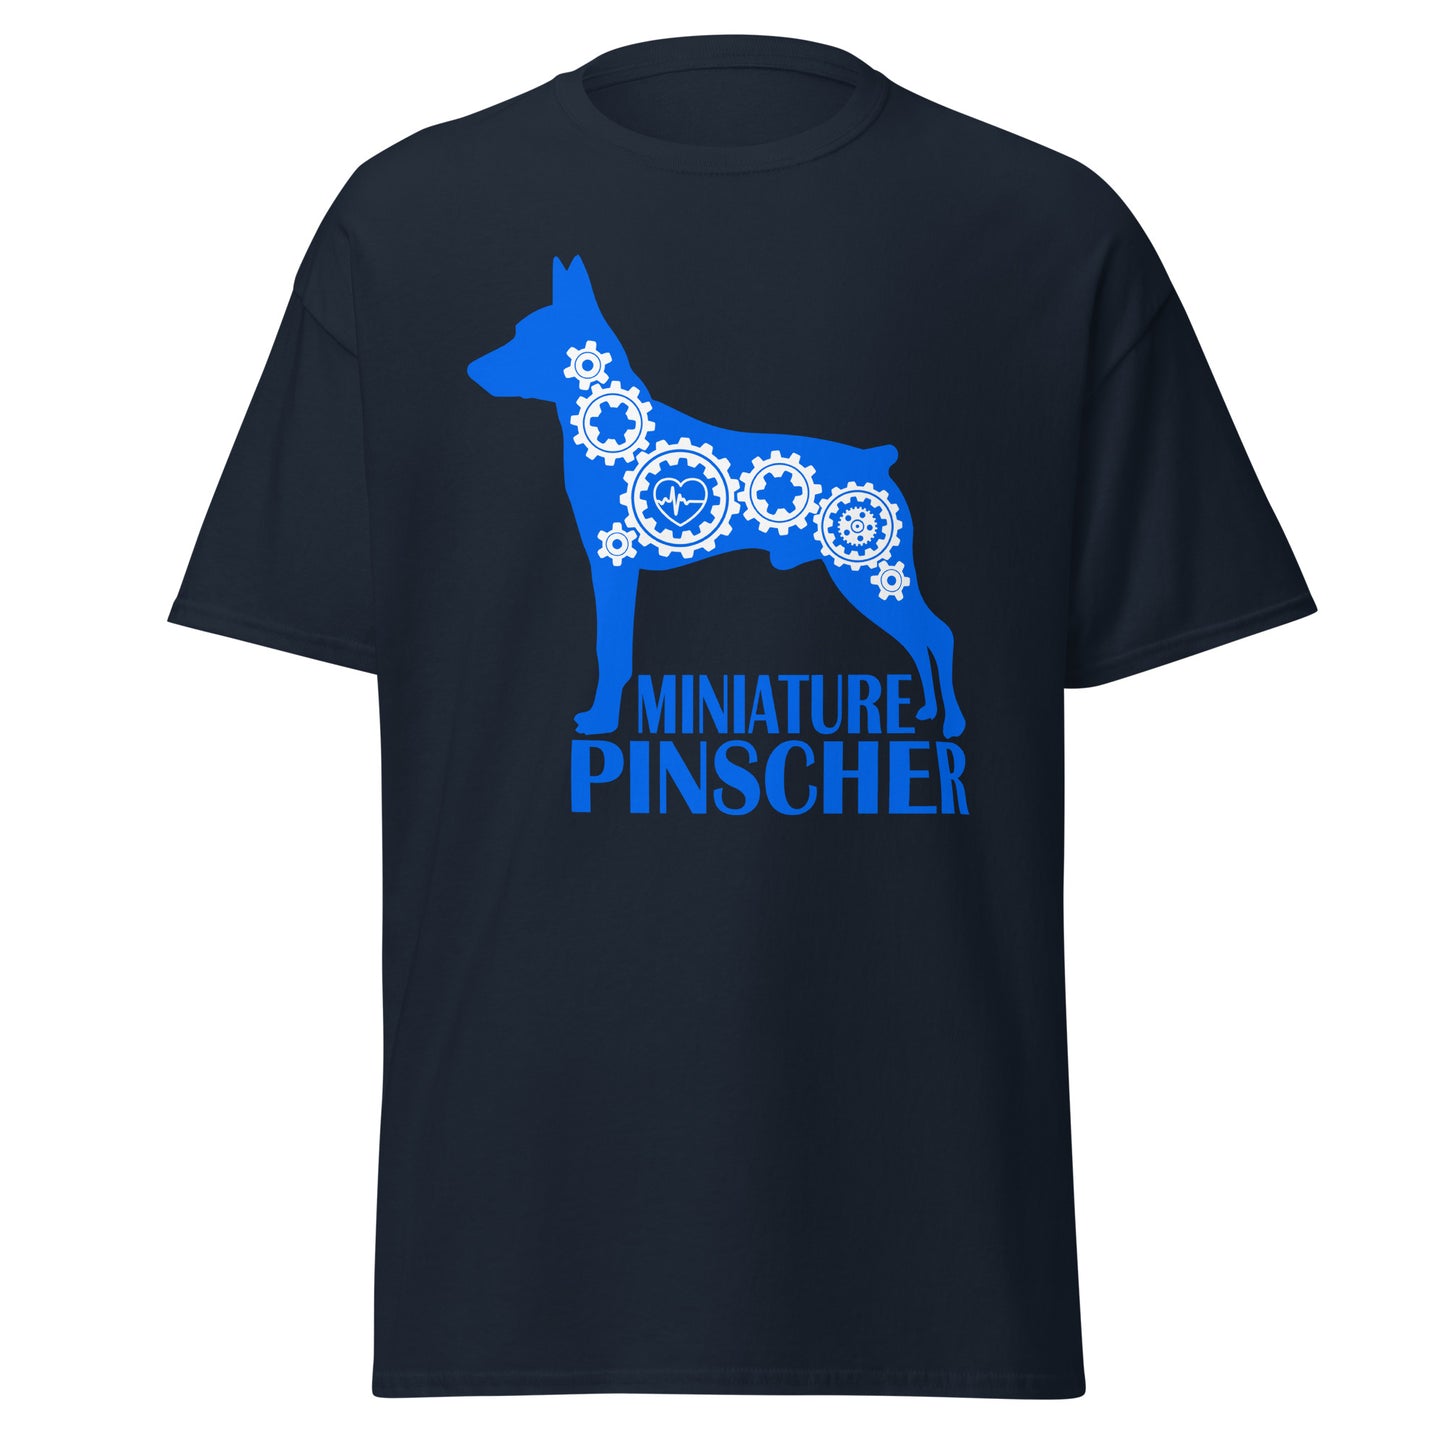 Miniature Pinscher Bionic men’s navy t-shirt by Dog Artistry.